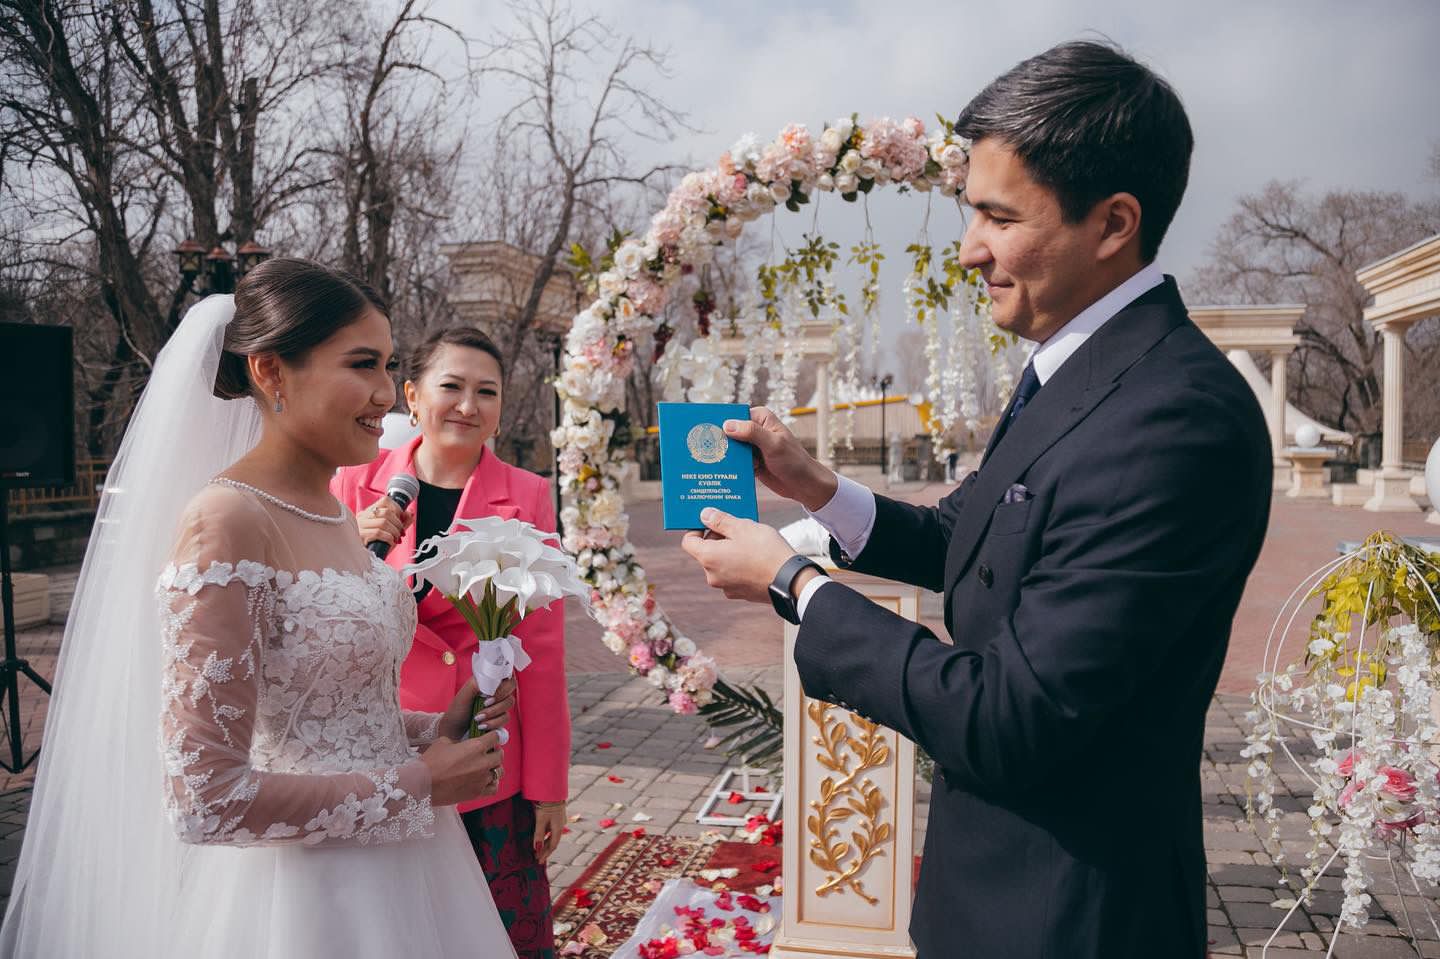 8 сентября 2023 года, в преддверии празднования Дня семьи в Республике Казахстан, утвержденного Указом Президента РК в 2013 году, сотрудники Департамента поздравили с бракосочетанием молодую семью - Базарбай Бақтияра Бейсенғалиұлы и Куралбаеву Назым Сабырхановну.